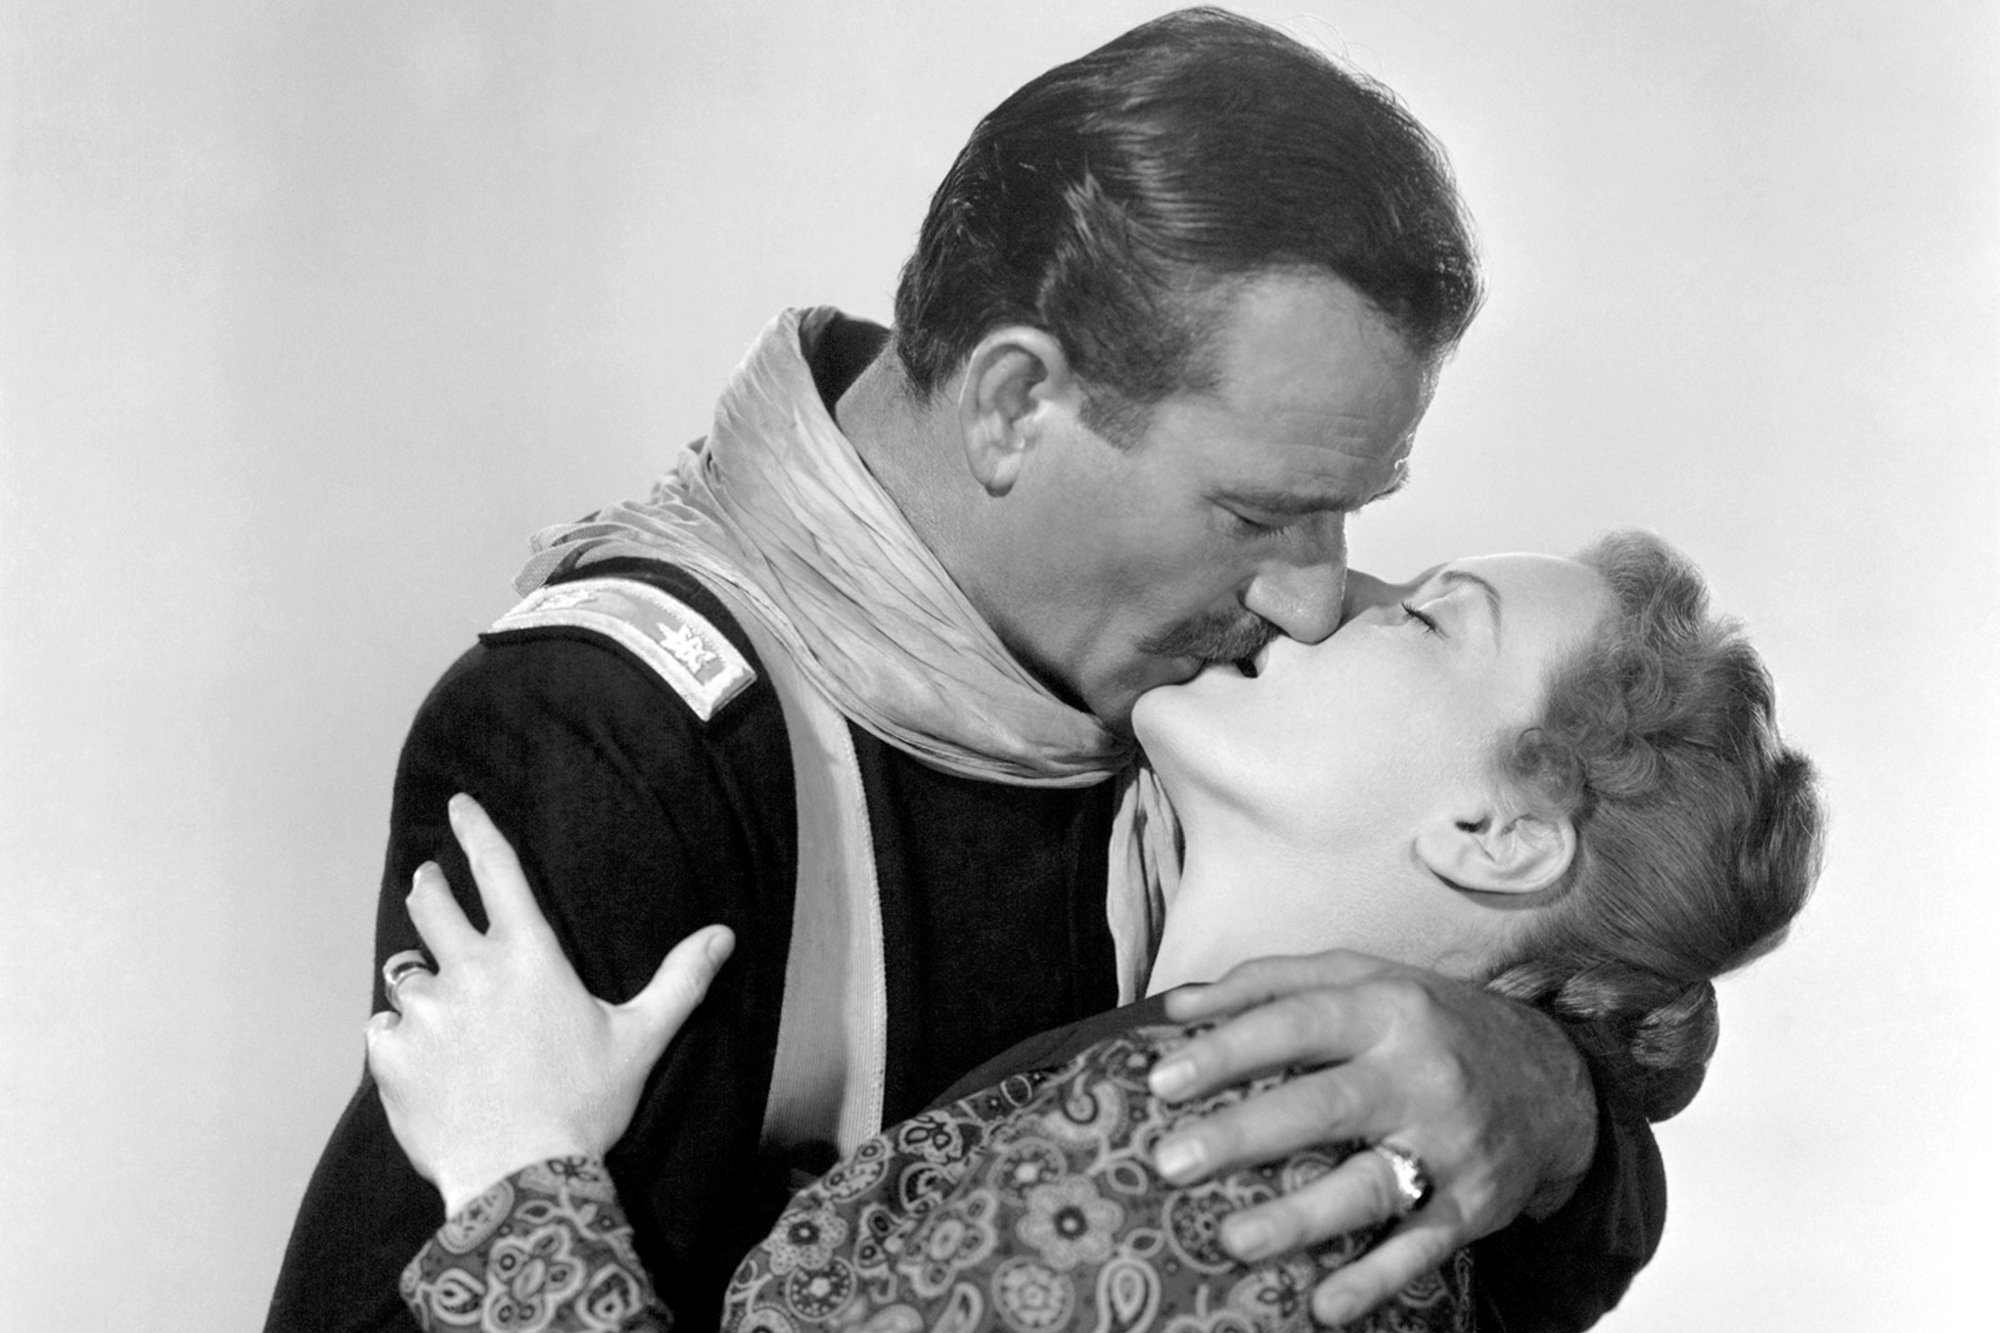 John Wayne and Maureen O'Hara embracing one another while kissing.